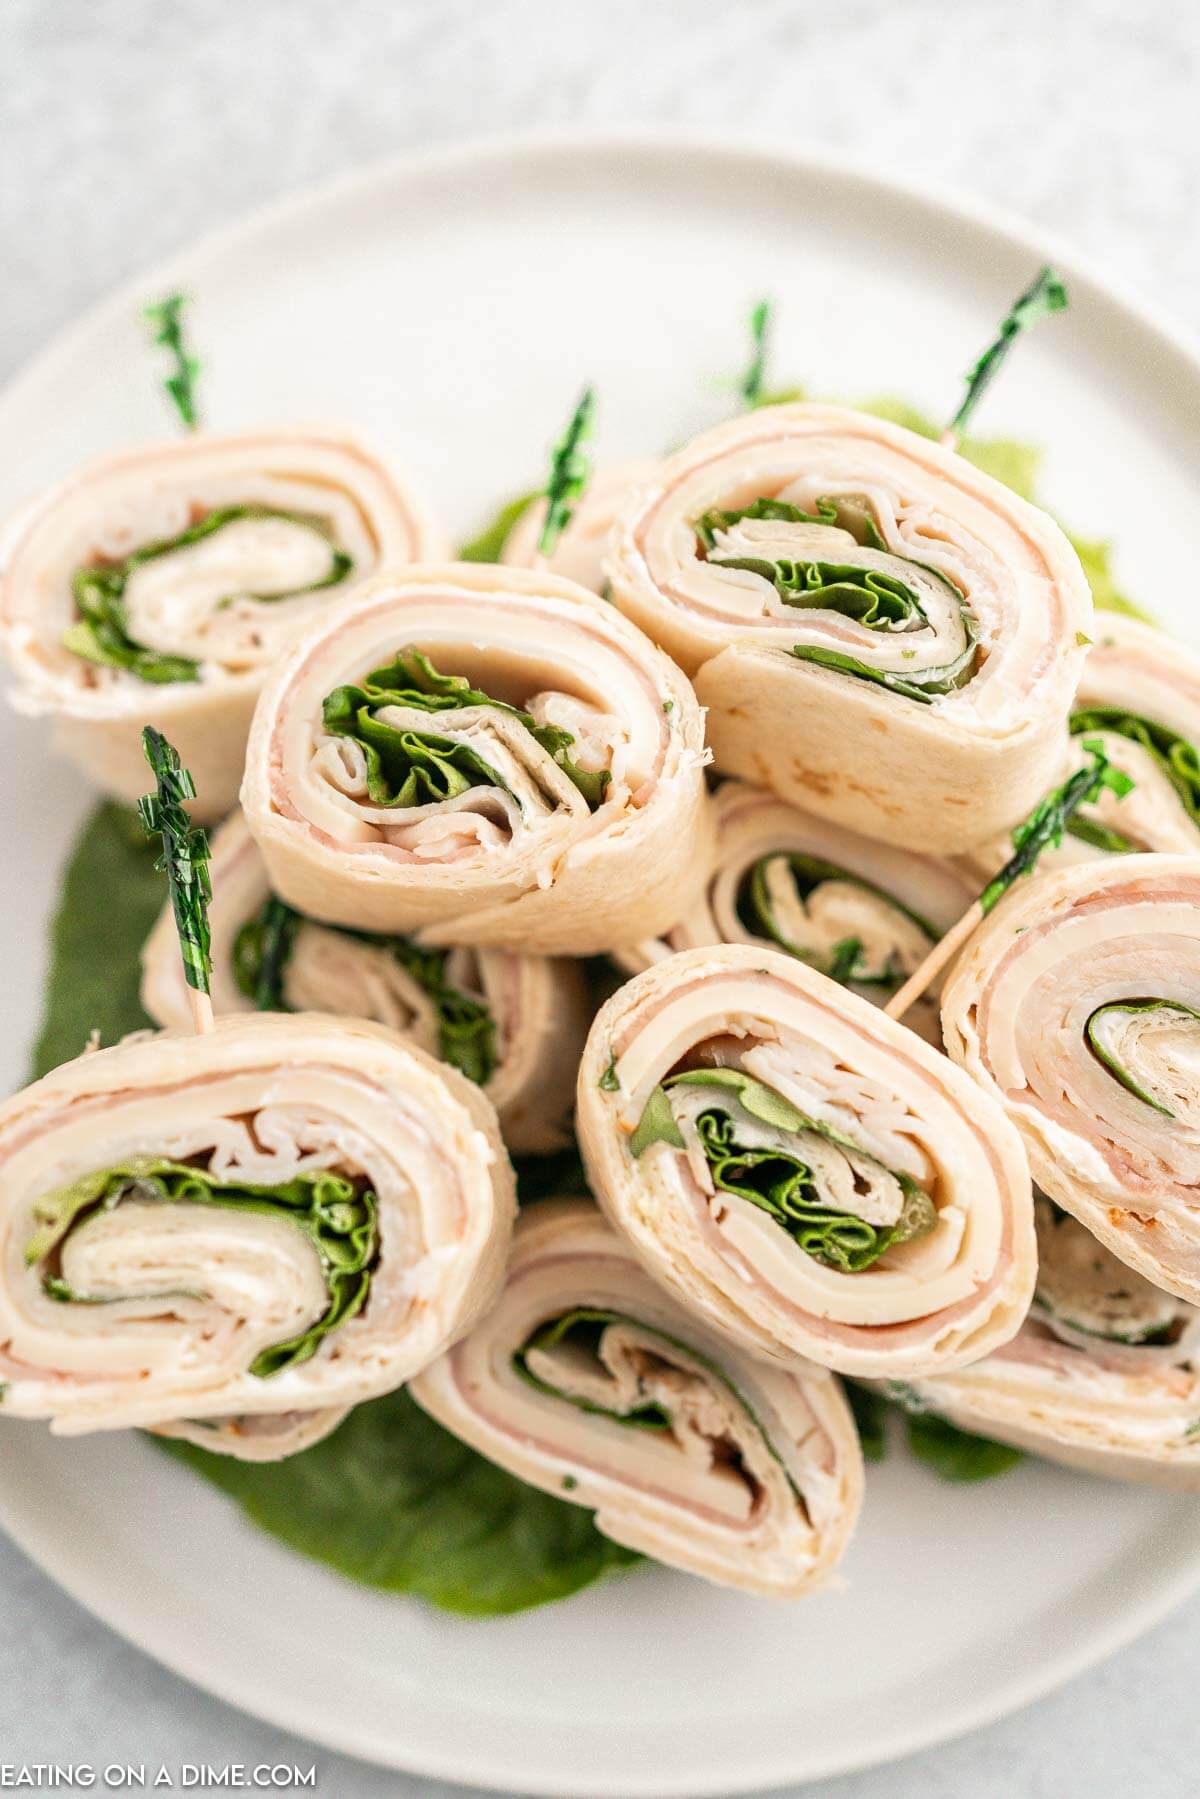 https://www.eatingonadime.com/wp-content/uploads/2022/07/pinwheel-sandwiches-28.jpg